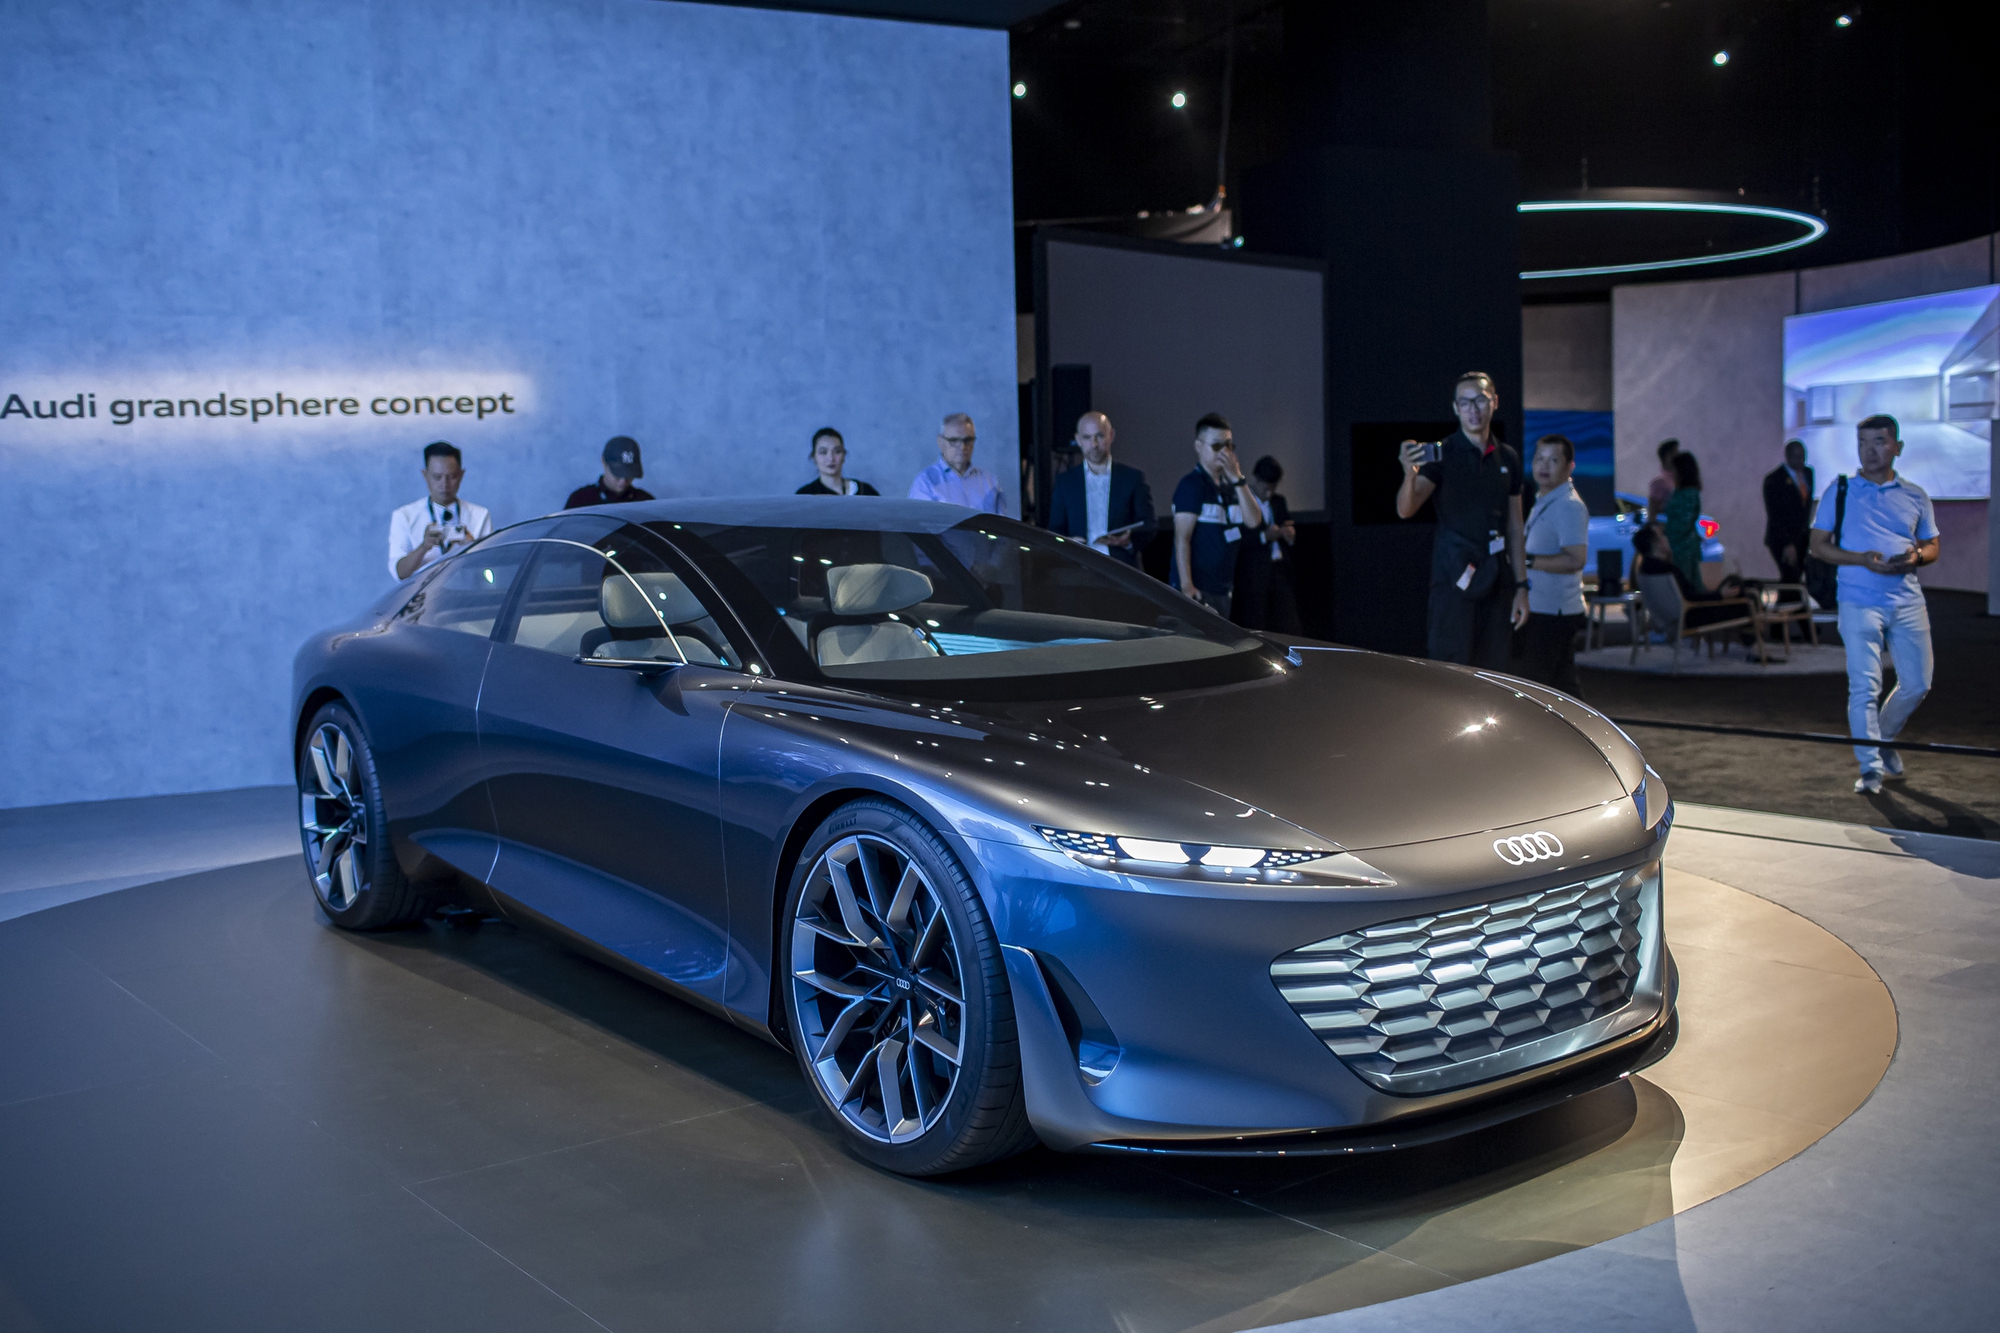 Grandsphere Concept: ‘Máy bay trên 4 bánh xe’, ‘bản nháp’ mẫu xe bậc nhất của Audi - Ảnh 3.